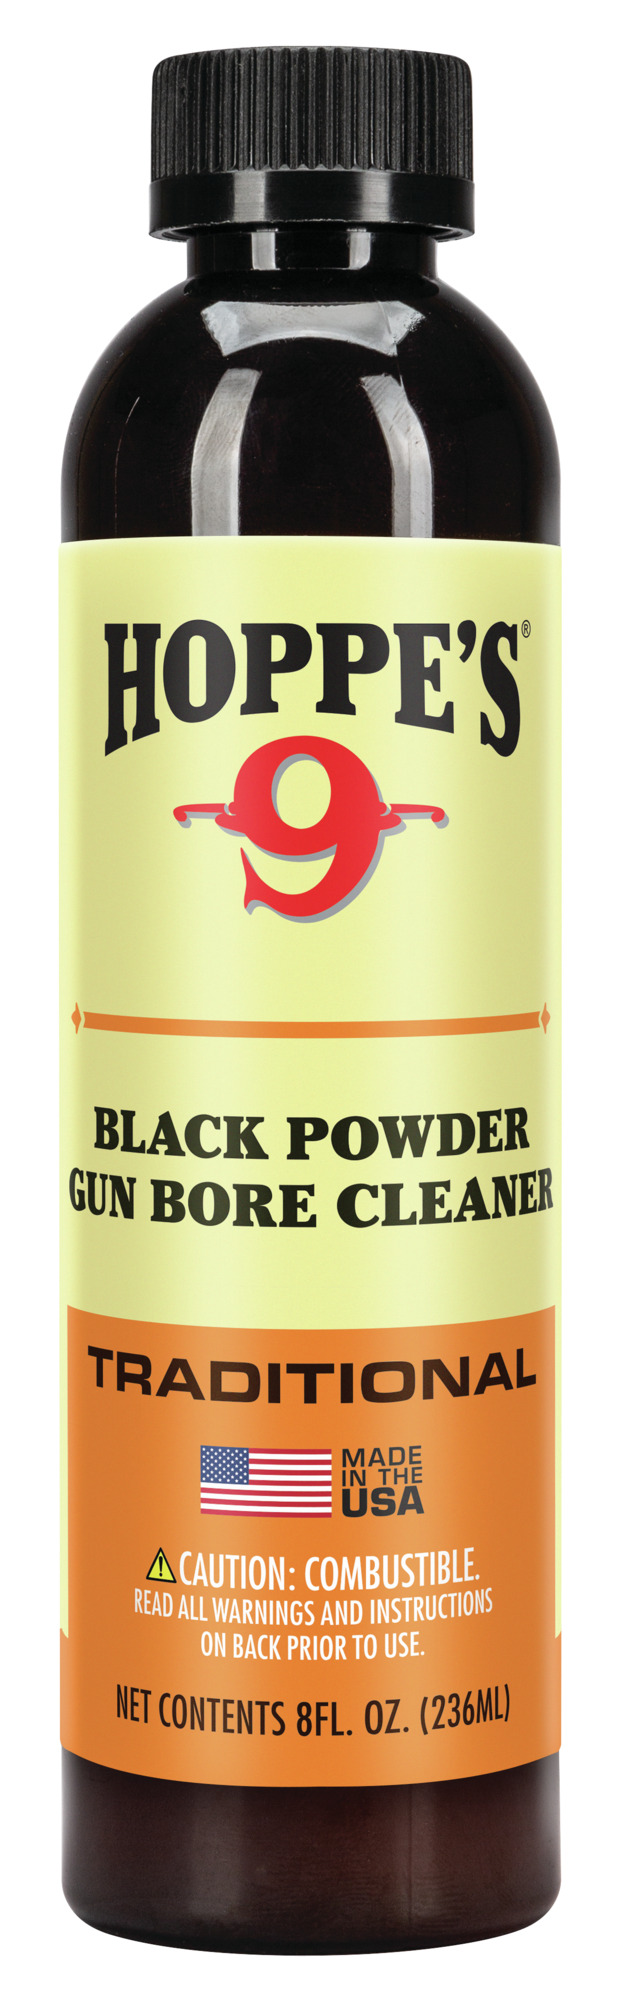 Buy No. 9 Black Powder and More